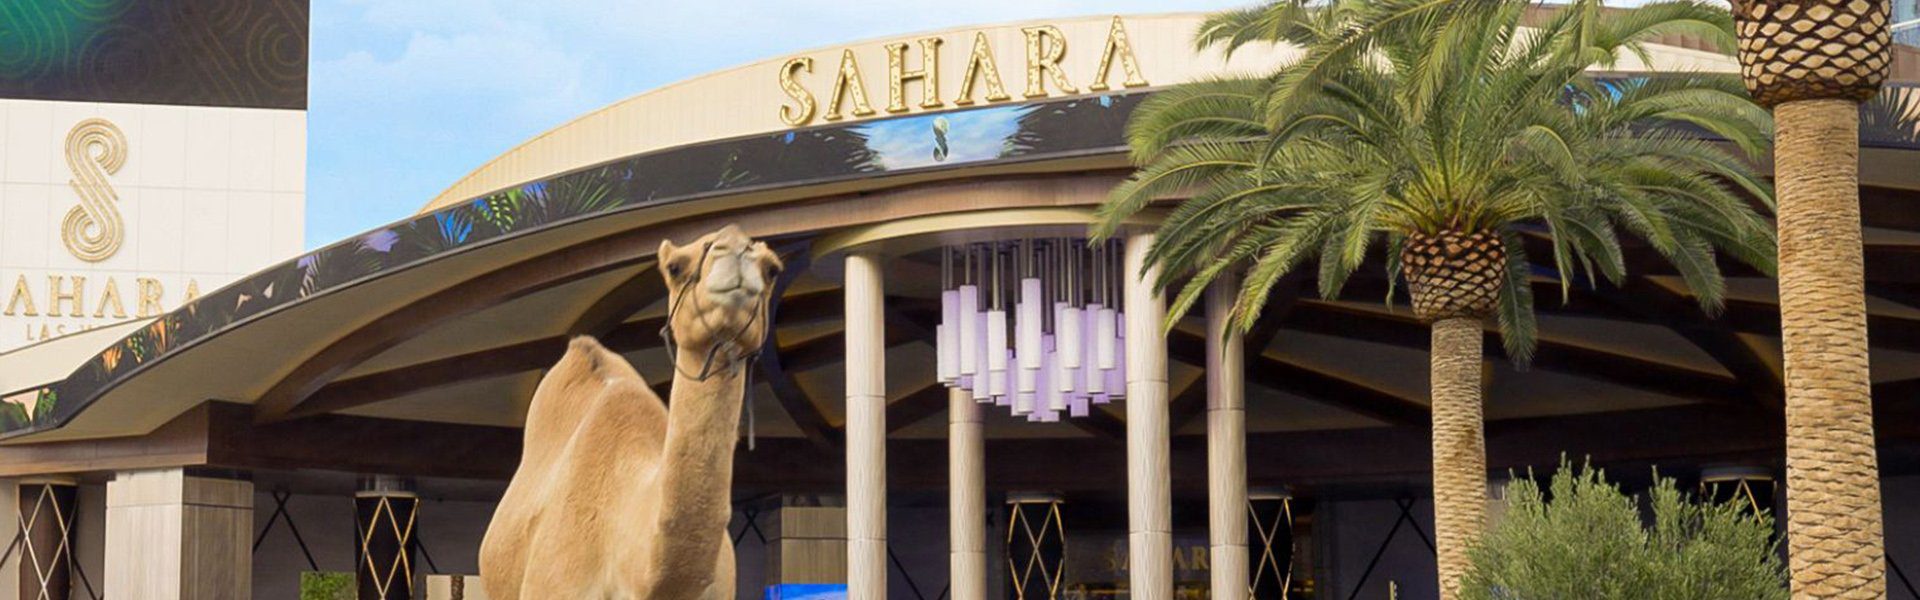 Sahara Las Vegas partners with Cendyn